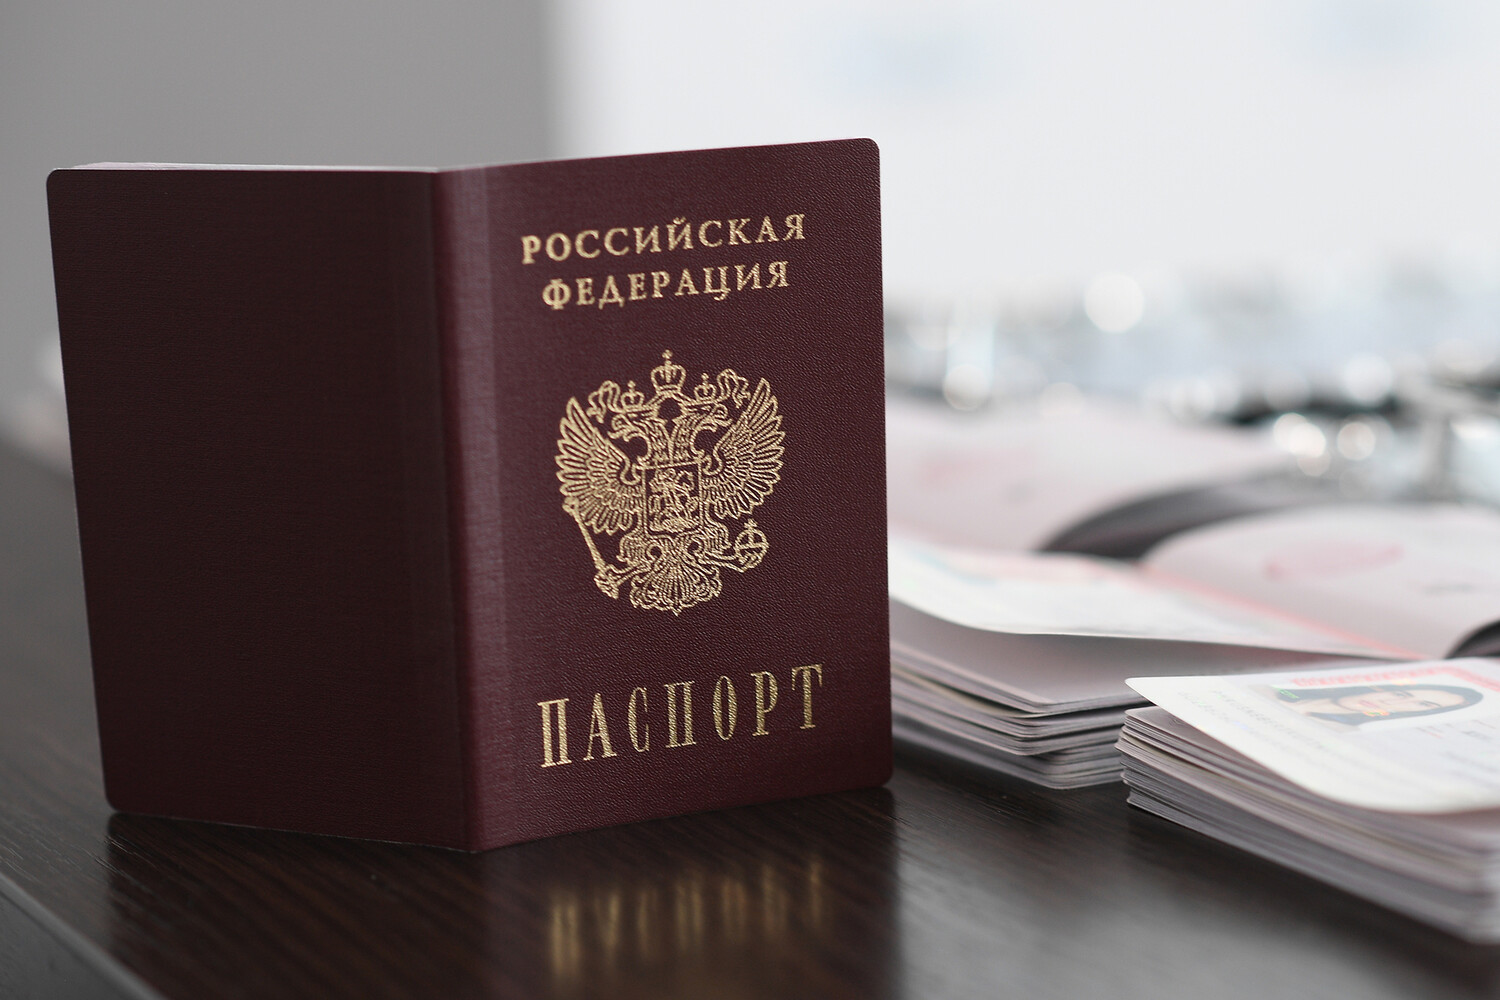 Как получить гражданство России гражданину Украины? Основные моменты этой процедуры